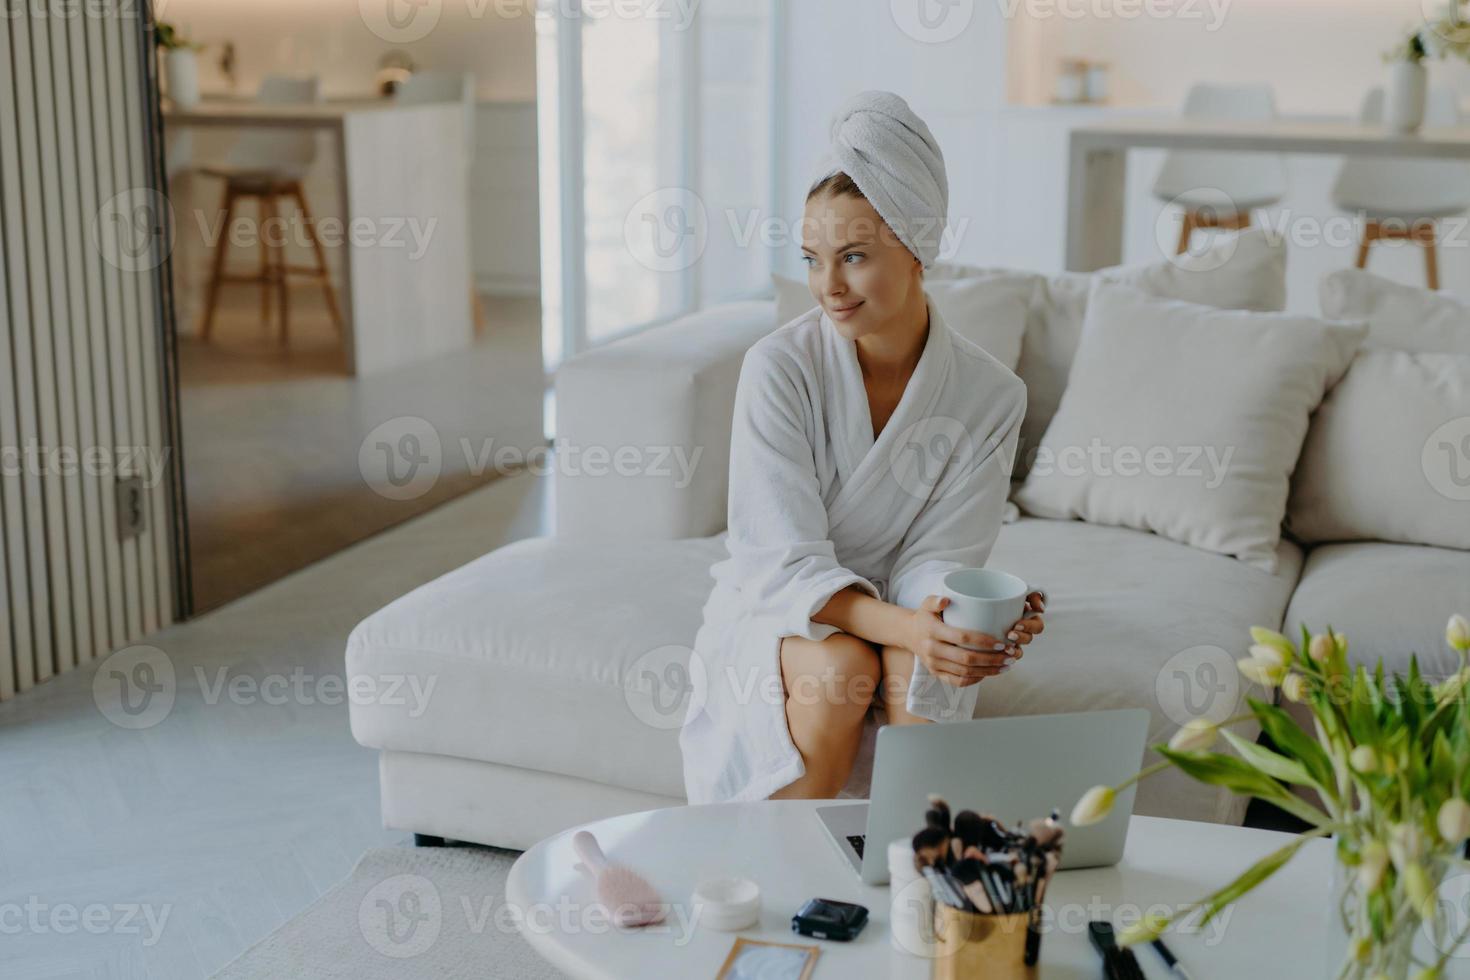 la donna rilassata e premurosa vestita in accappatoio e asciugamano avvolto sulla testa si siede sul divano con una tazza di bevanda vicino al tavolo con prodotti cosmetici sembra pensierosa posa da parte contro l'interno accogliente della casa foto